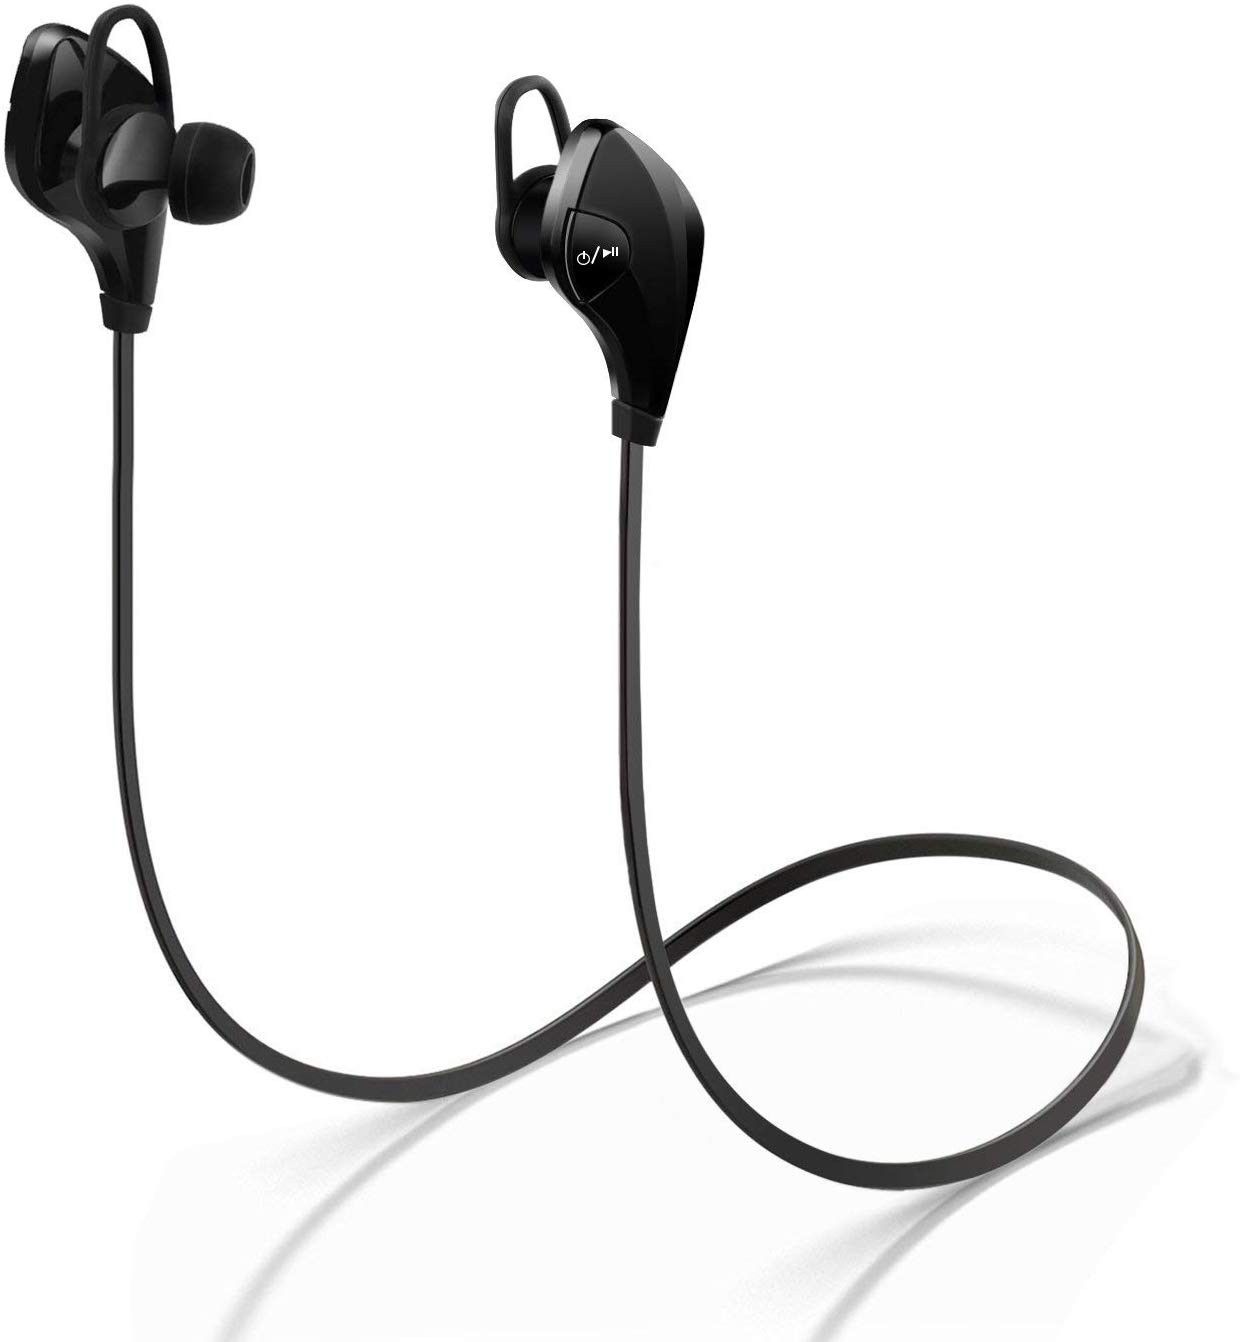 Bluetooth Headphones WEILIGU Wireless Earbuds Waterproof Sweatproof Sports HD Stereo Noise Cancelling Headphones